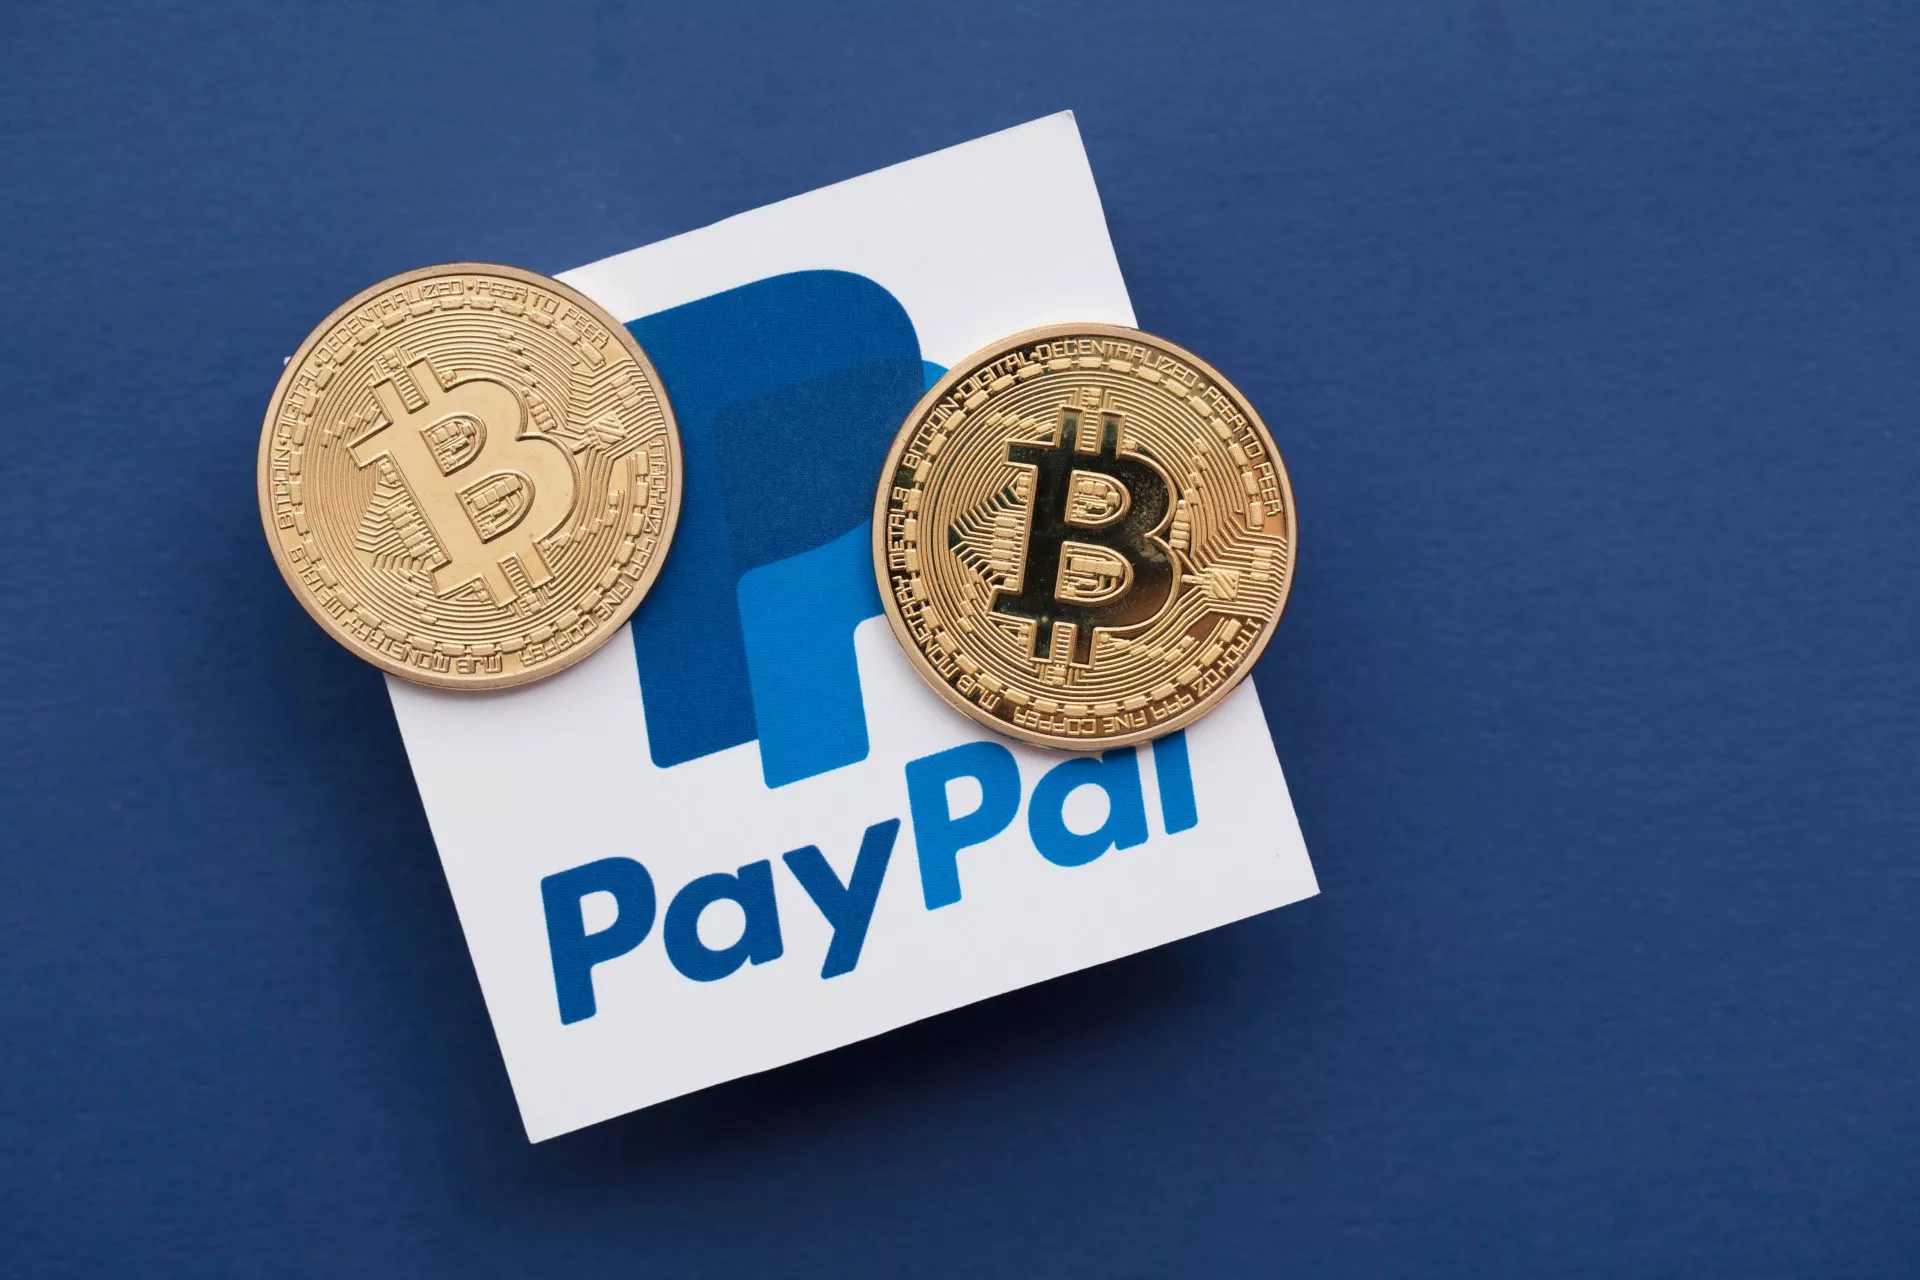 Adoptie voor stablecoin PayPal valt zwaar tegen